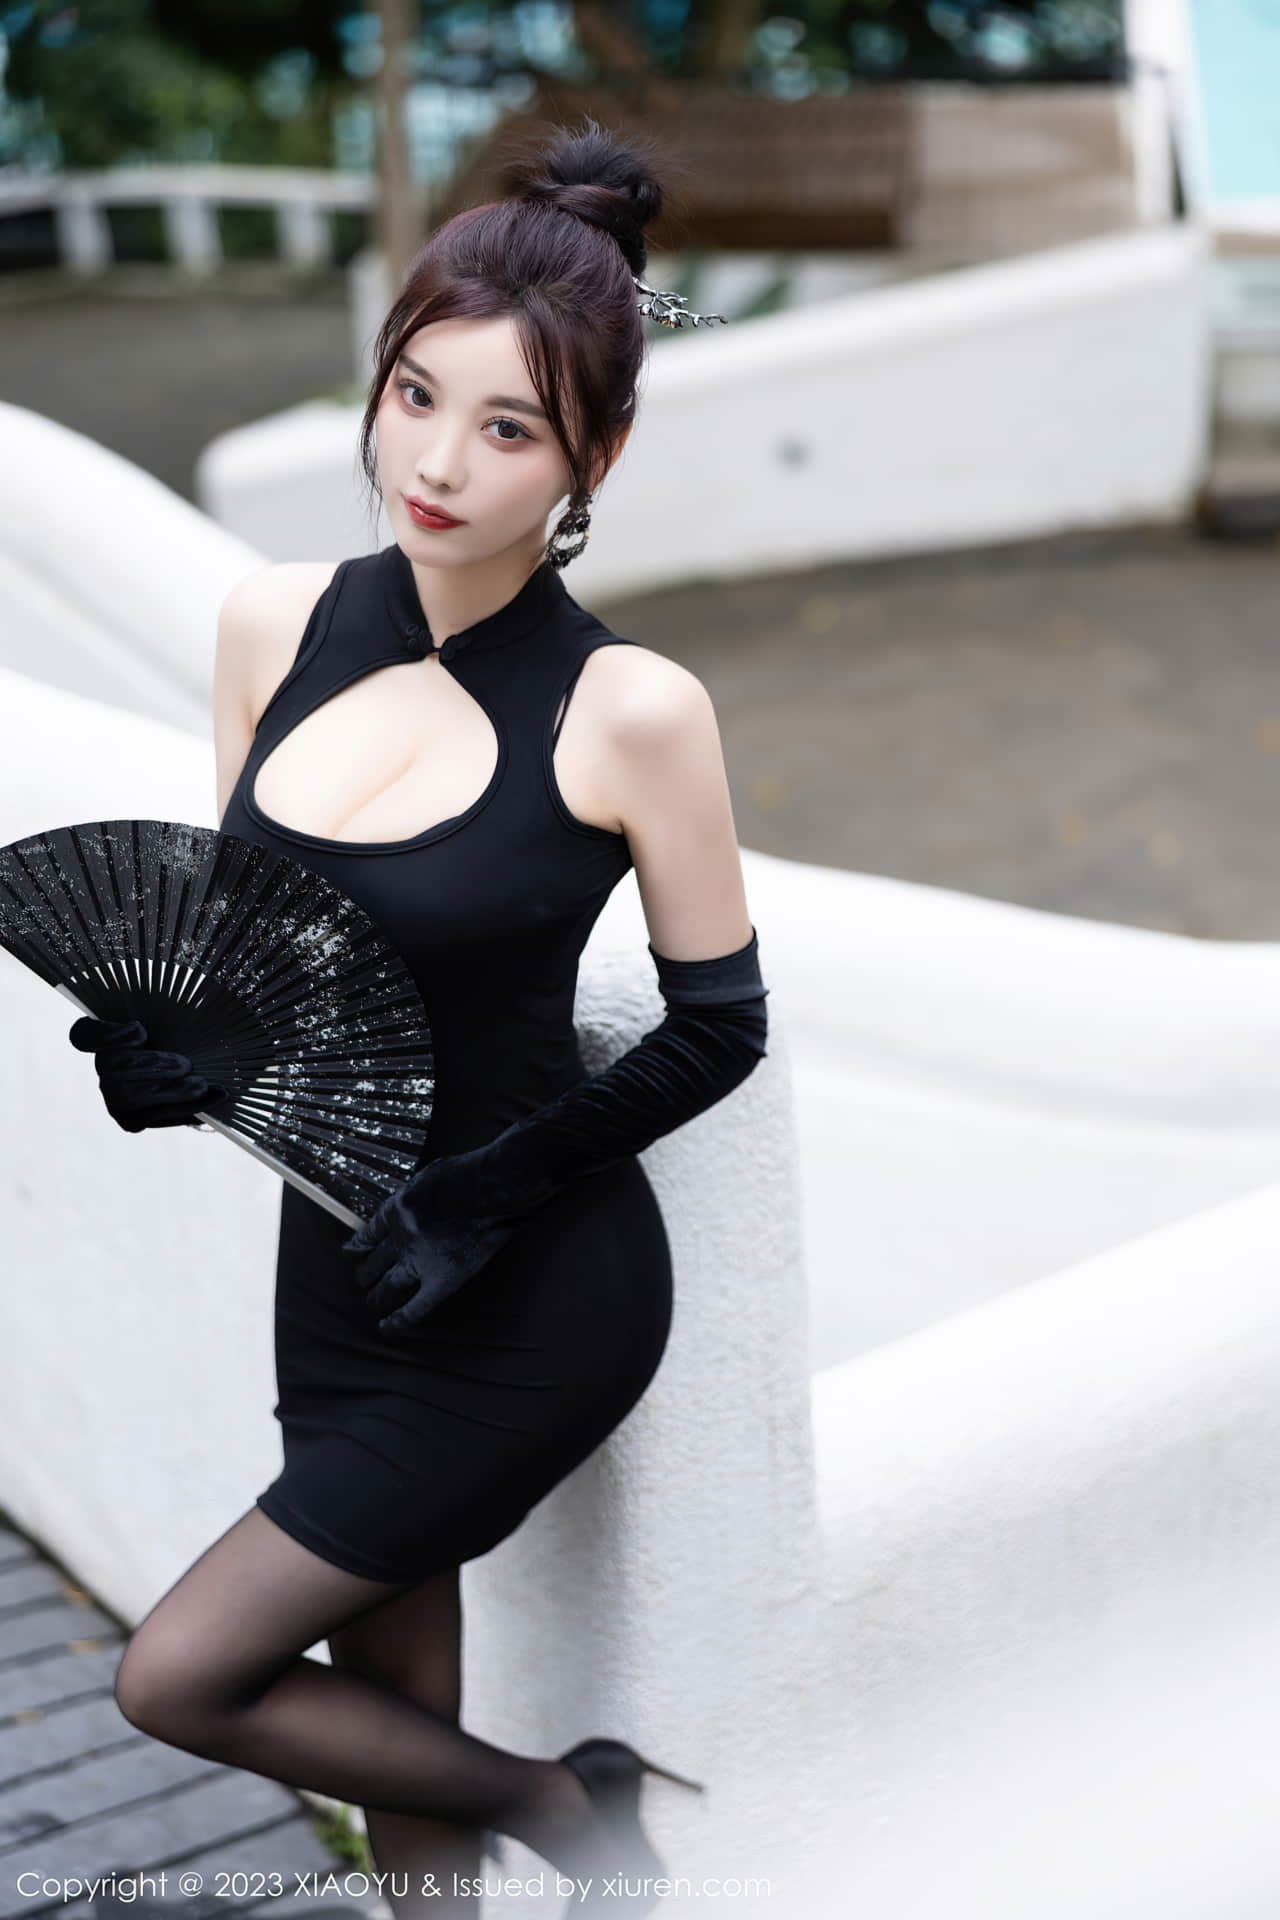 개인 맞춤 섹시 여신 양진진의 검은색 짧은 치파오 드레스는 섹시하면서도 매력적이며, 여신의 통통한 몸매가 숨을 멎게 한다.